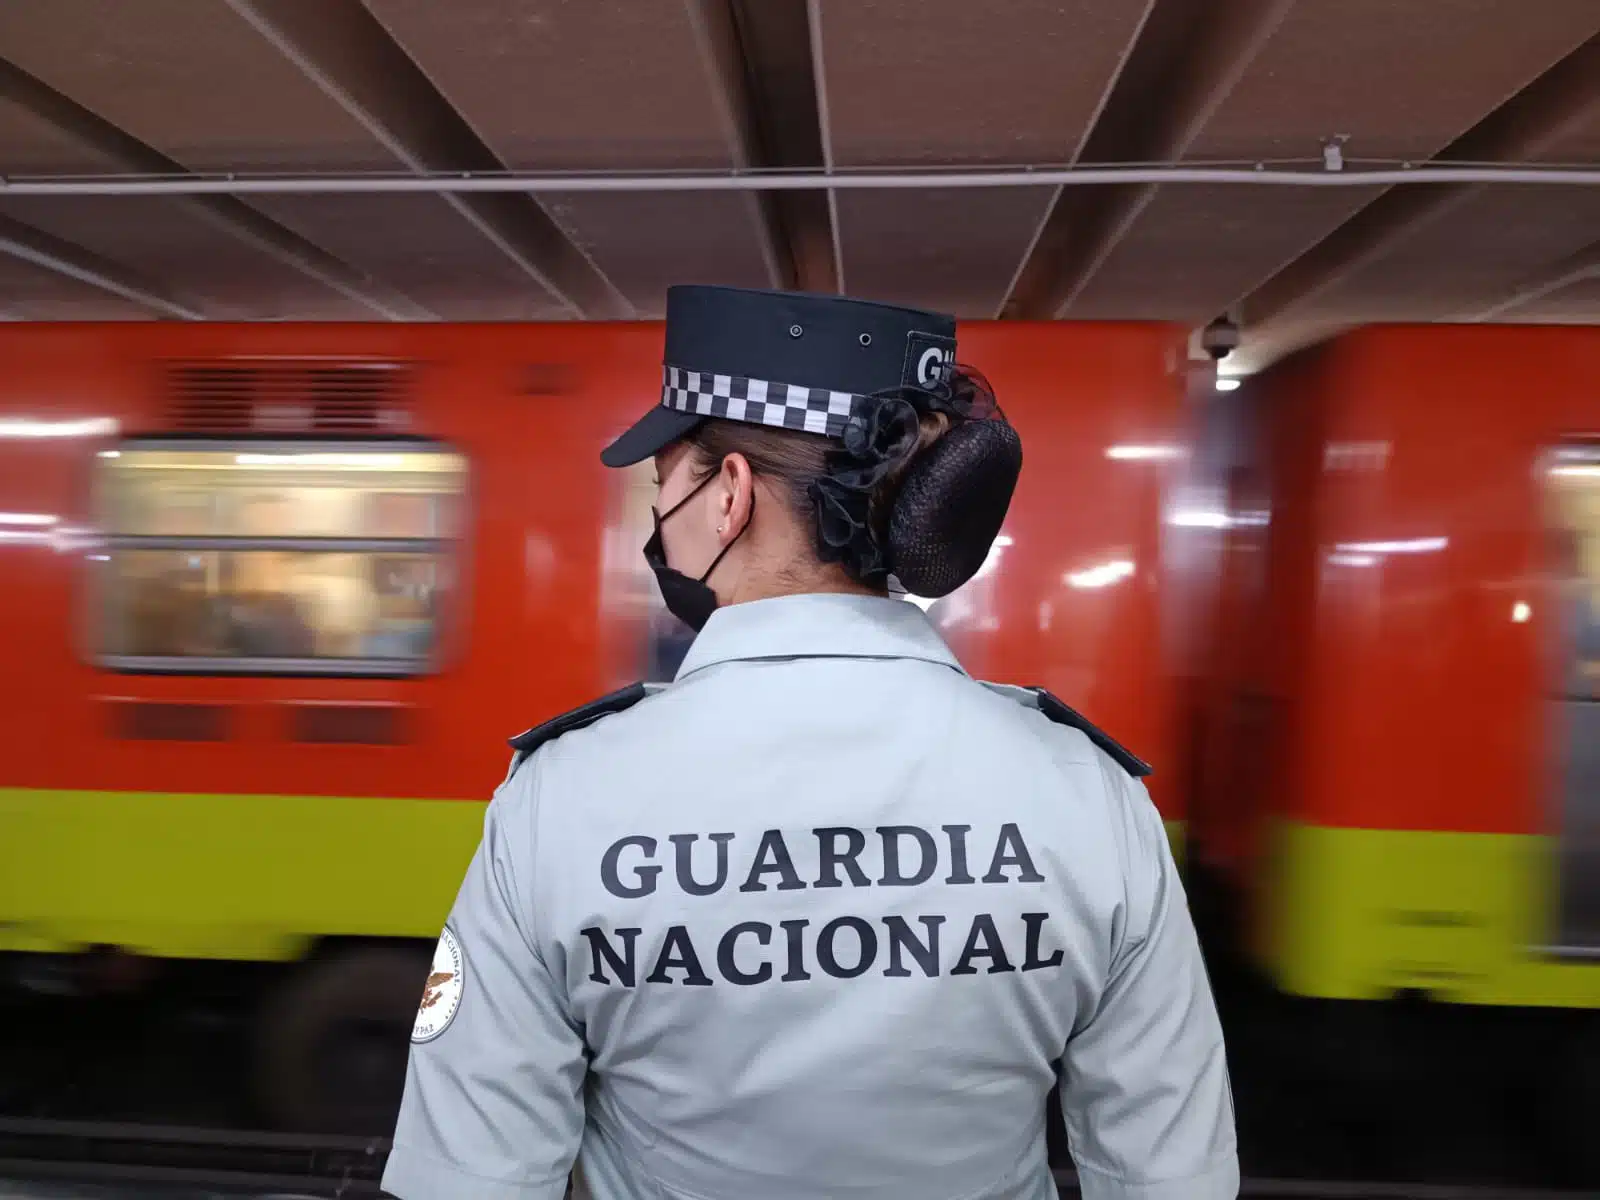 Guardia Nacional en el metro